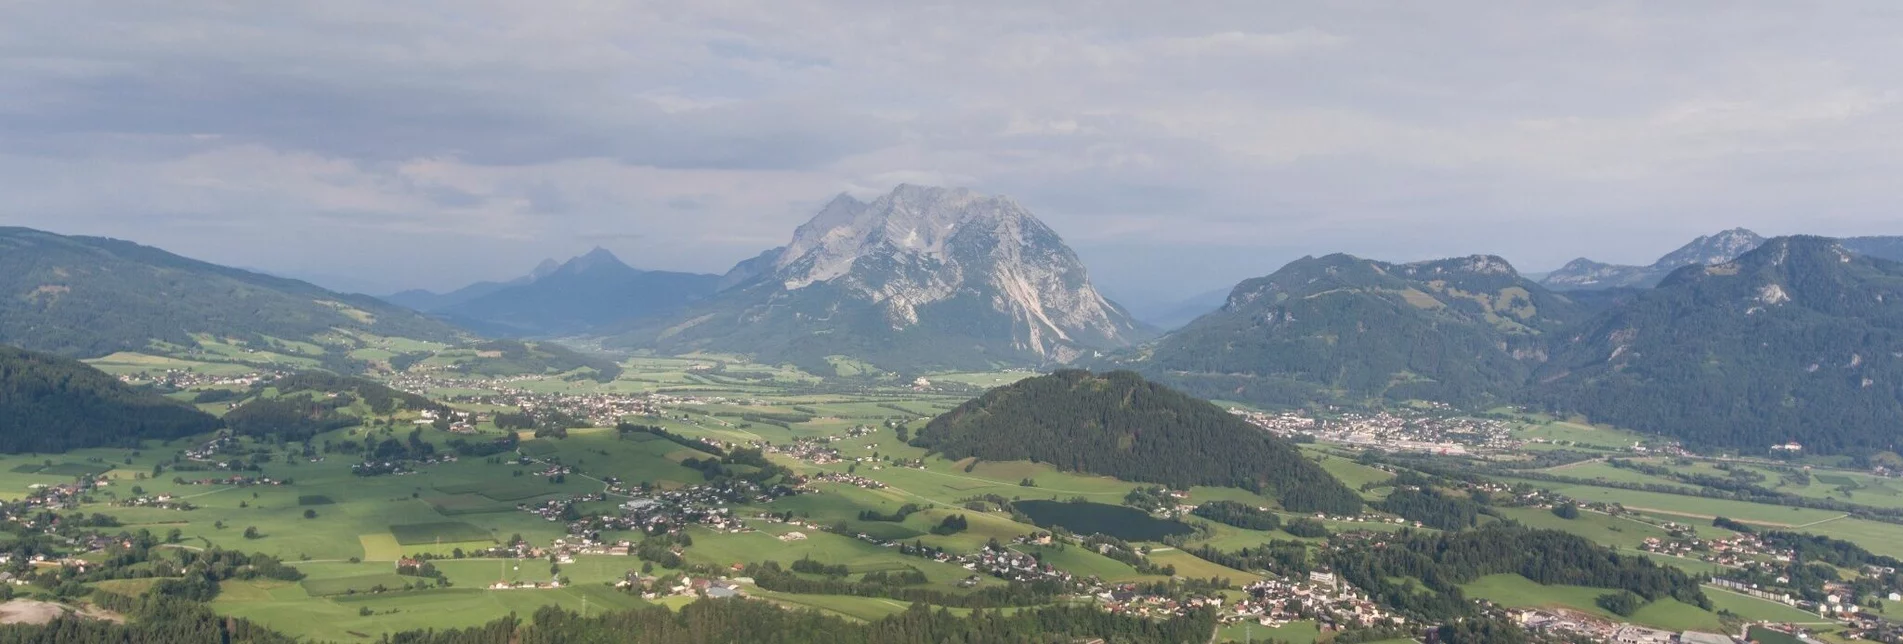 Mountain Biking Aigen Tour | 24 - Touren-Impression #1 | © Erlebnisregion Schladming-Dachstein